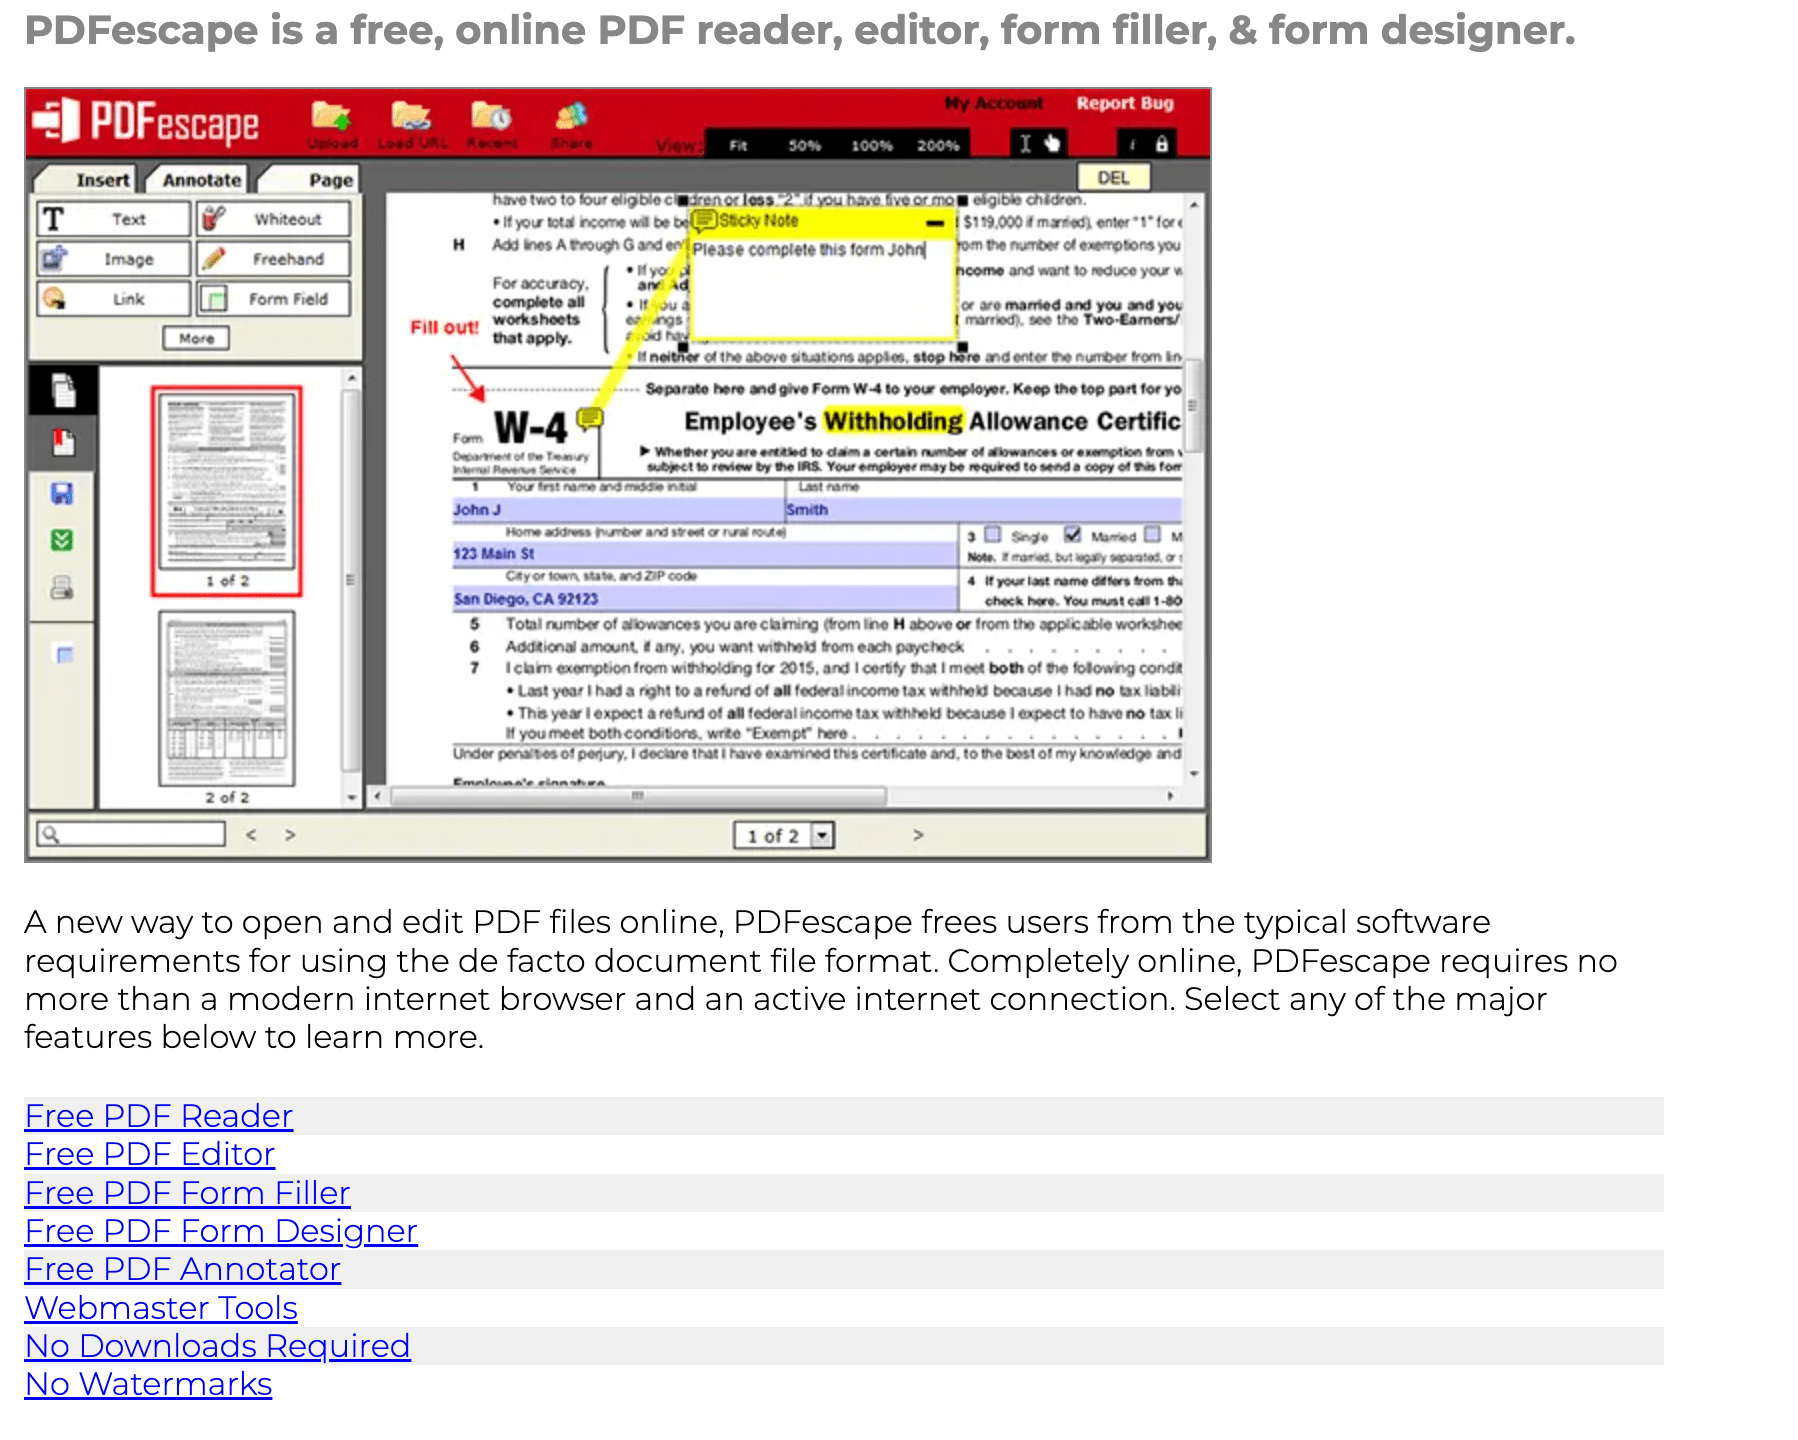 PDFescape Features